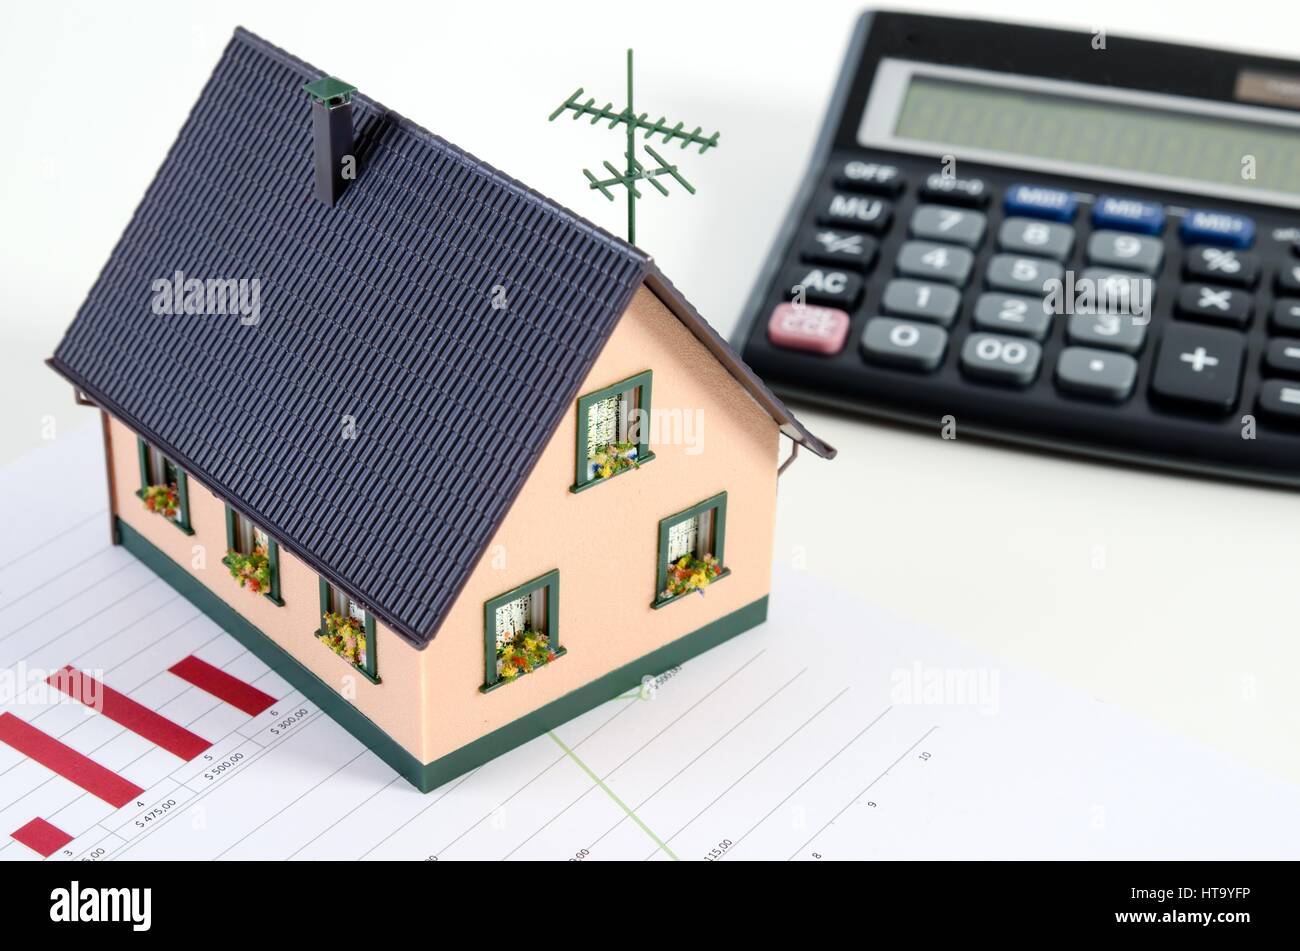 Home finanze o il salvataggio di una casa. Casa in miniatura e calcolatrice Foto Stock